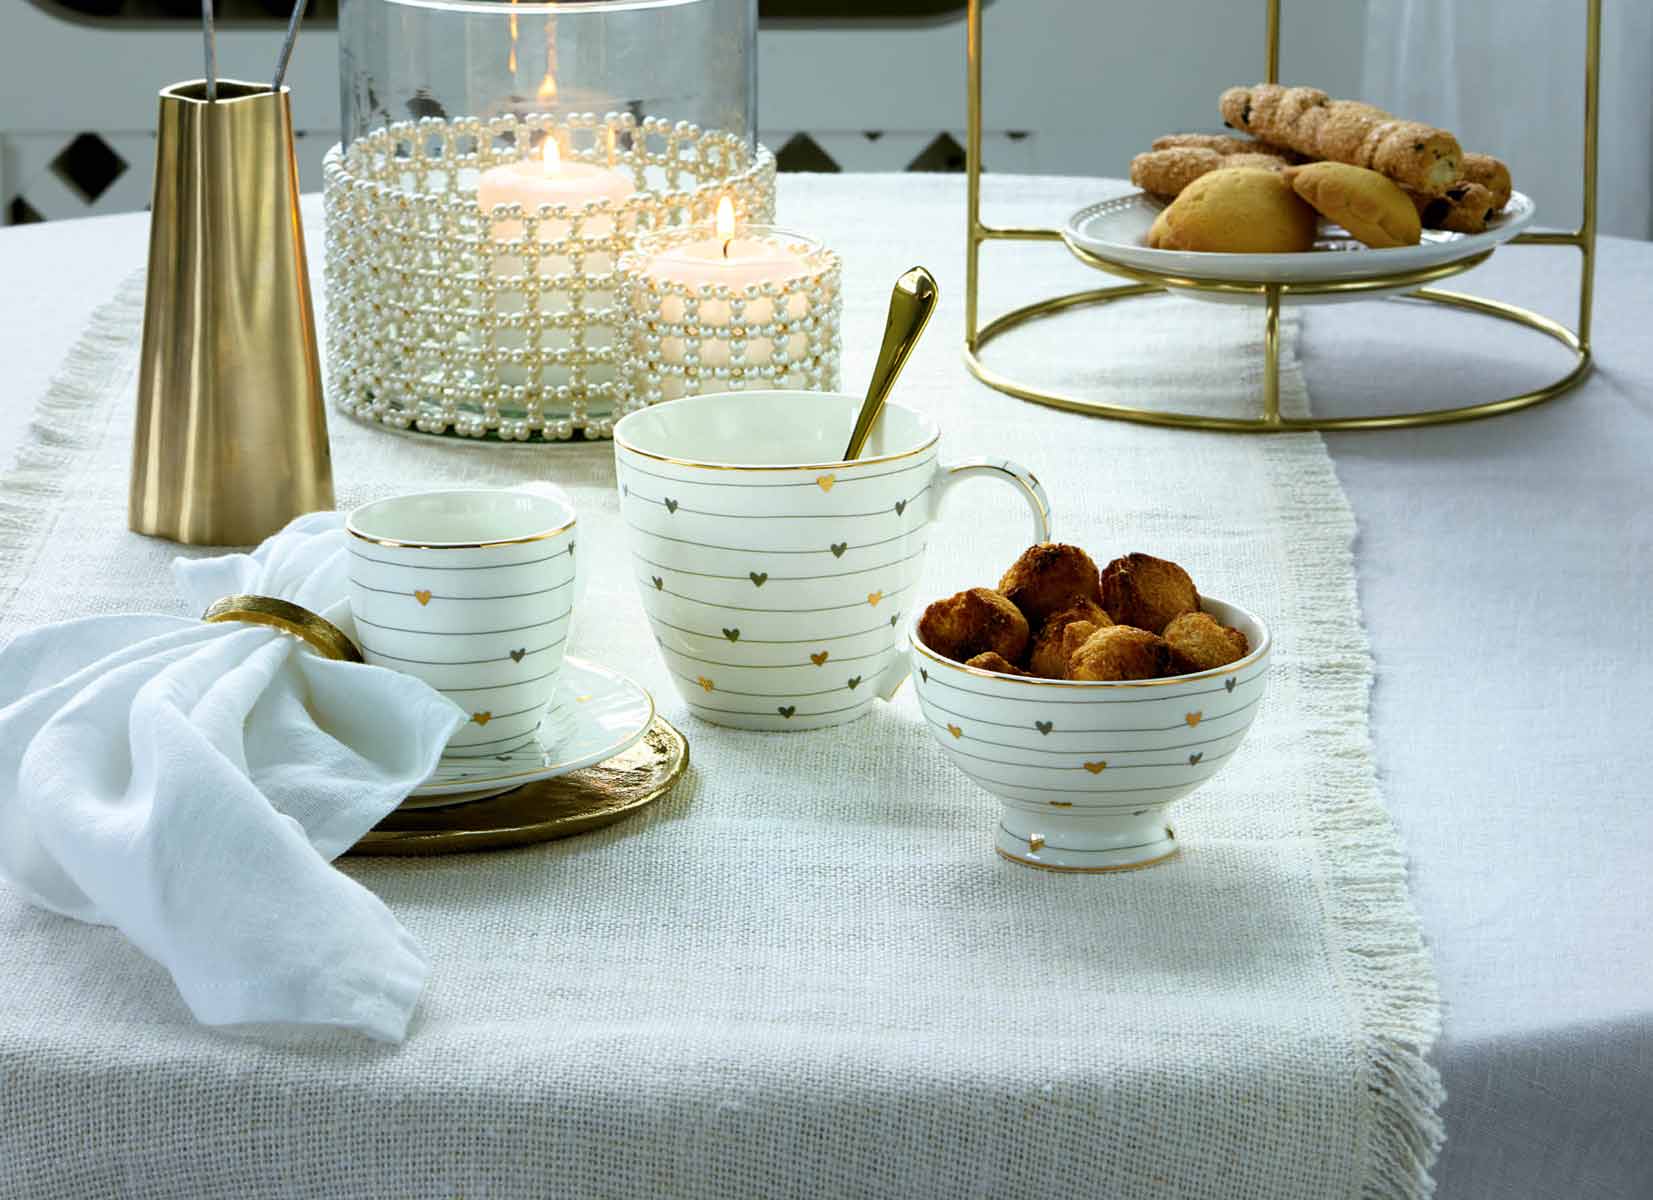 Auf einem mit einer weißen Tischdecke gedeckten Tisch stehen eine Teetasse mit Untertasse, eine Schüssel mit Gebäck, ein Becher, eine weiße Leinenserviette, eine goldfarbene Karaffe und eine Kerze in einem mit Kristallen verzierten Glashalter.